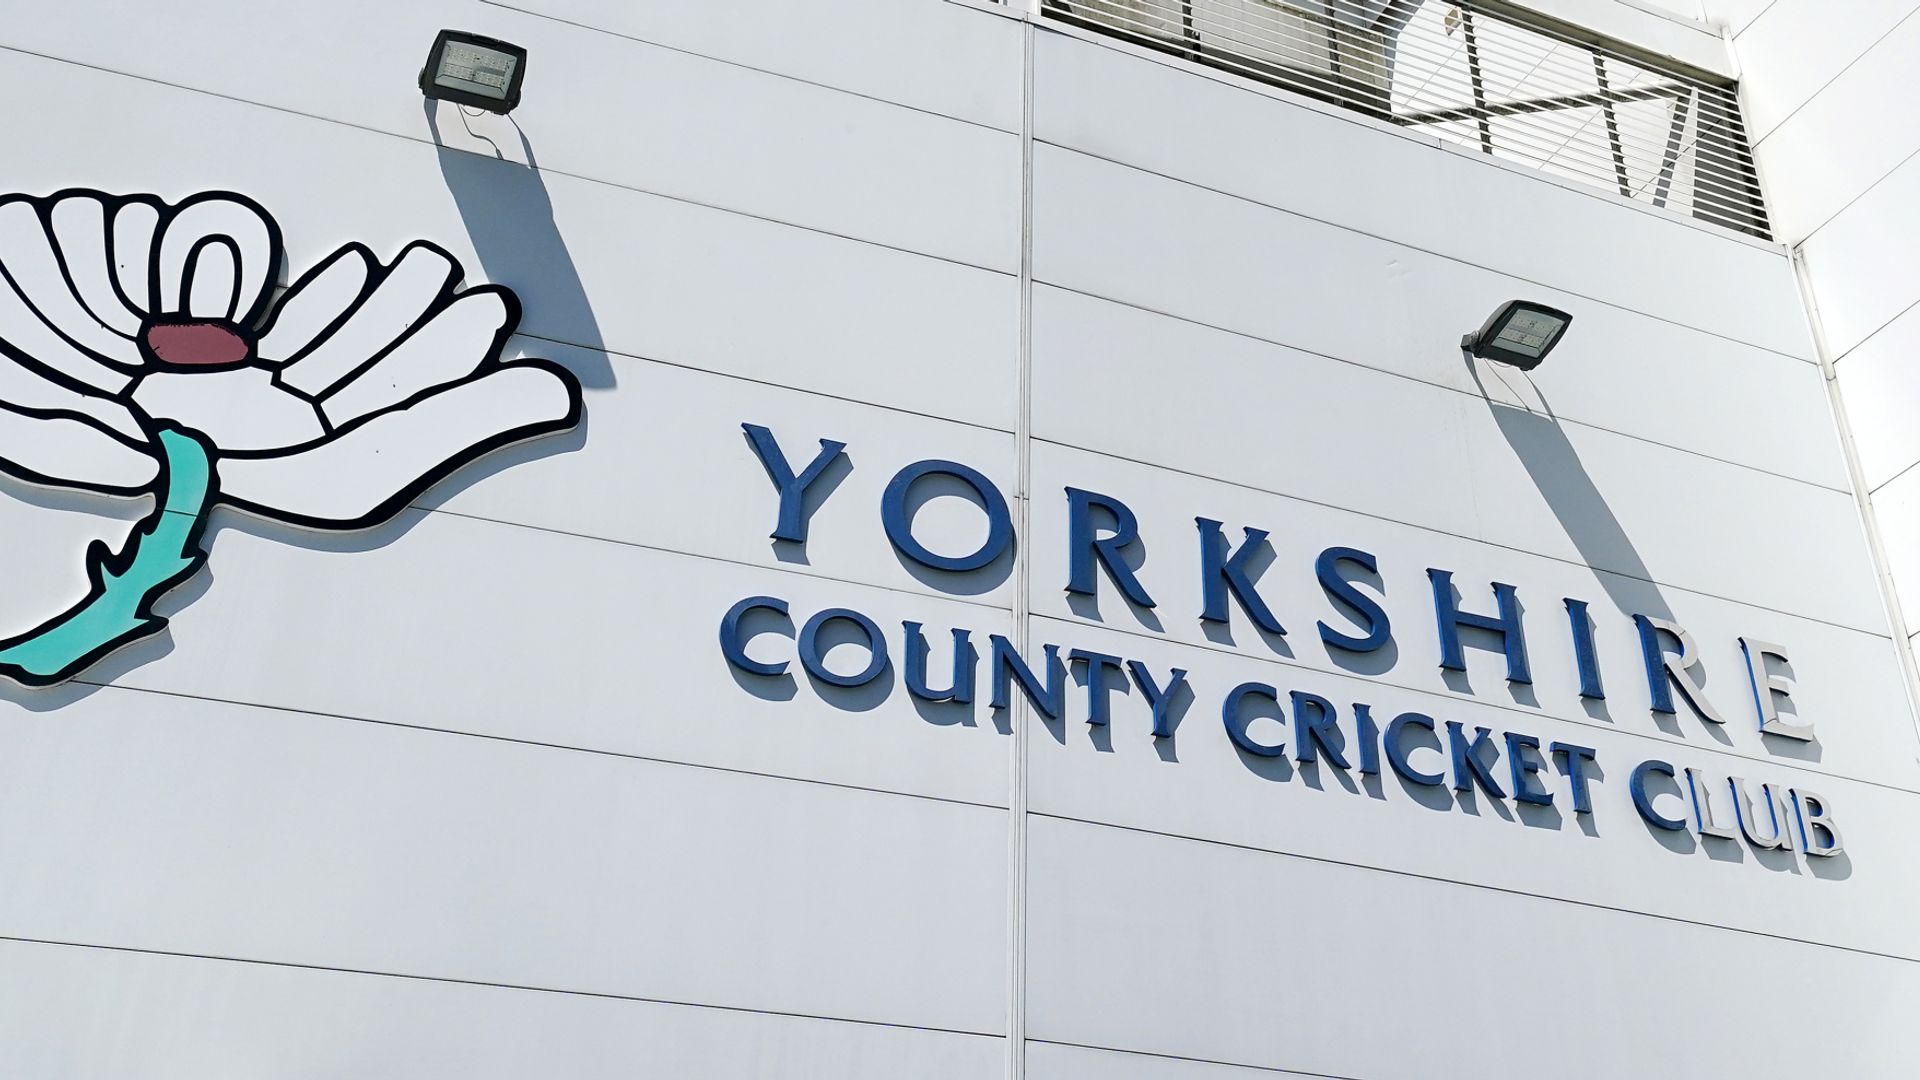 Mantan pemain dan pelatih Yorkshire termasuk Gary Ballance, Tim Bresnan, Andrew Gale dikenai sanksi oleh CDC |  Berita Kriket